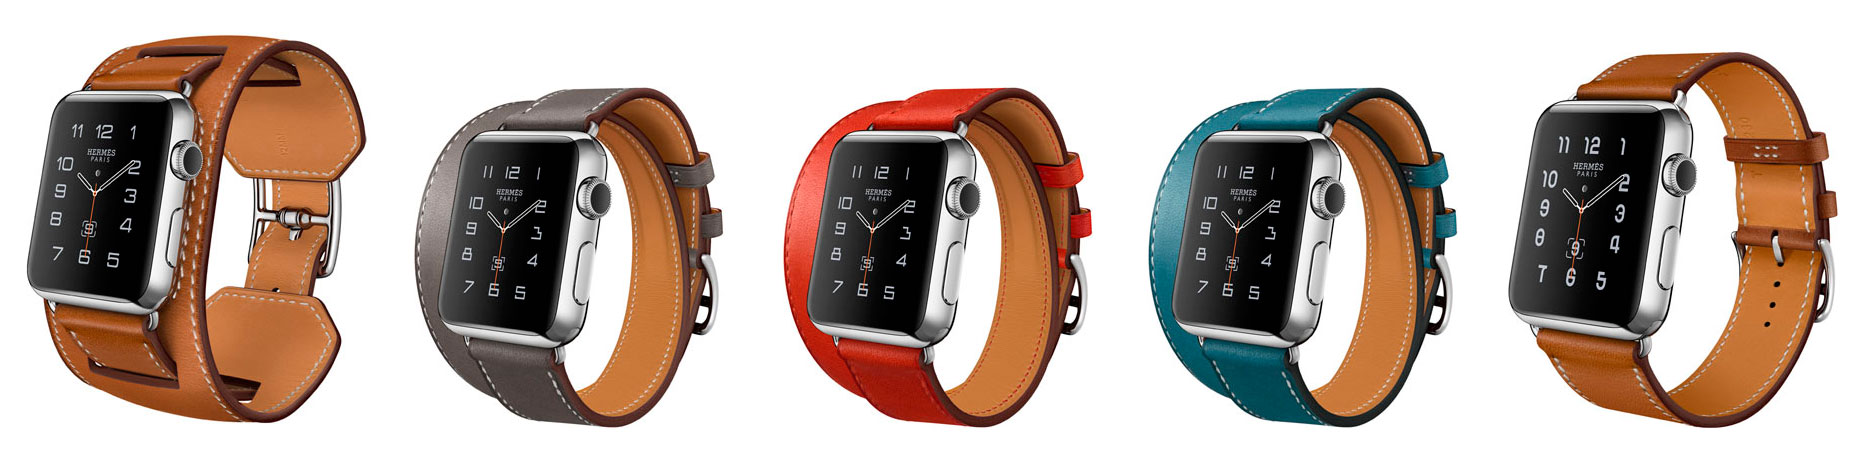 Apple Watch Hermes - modelos